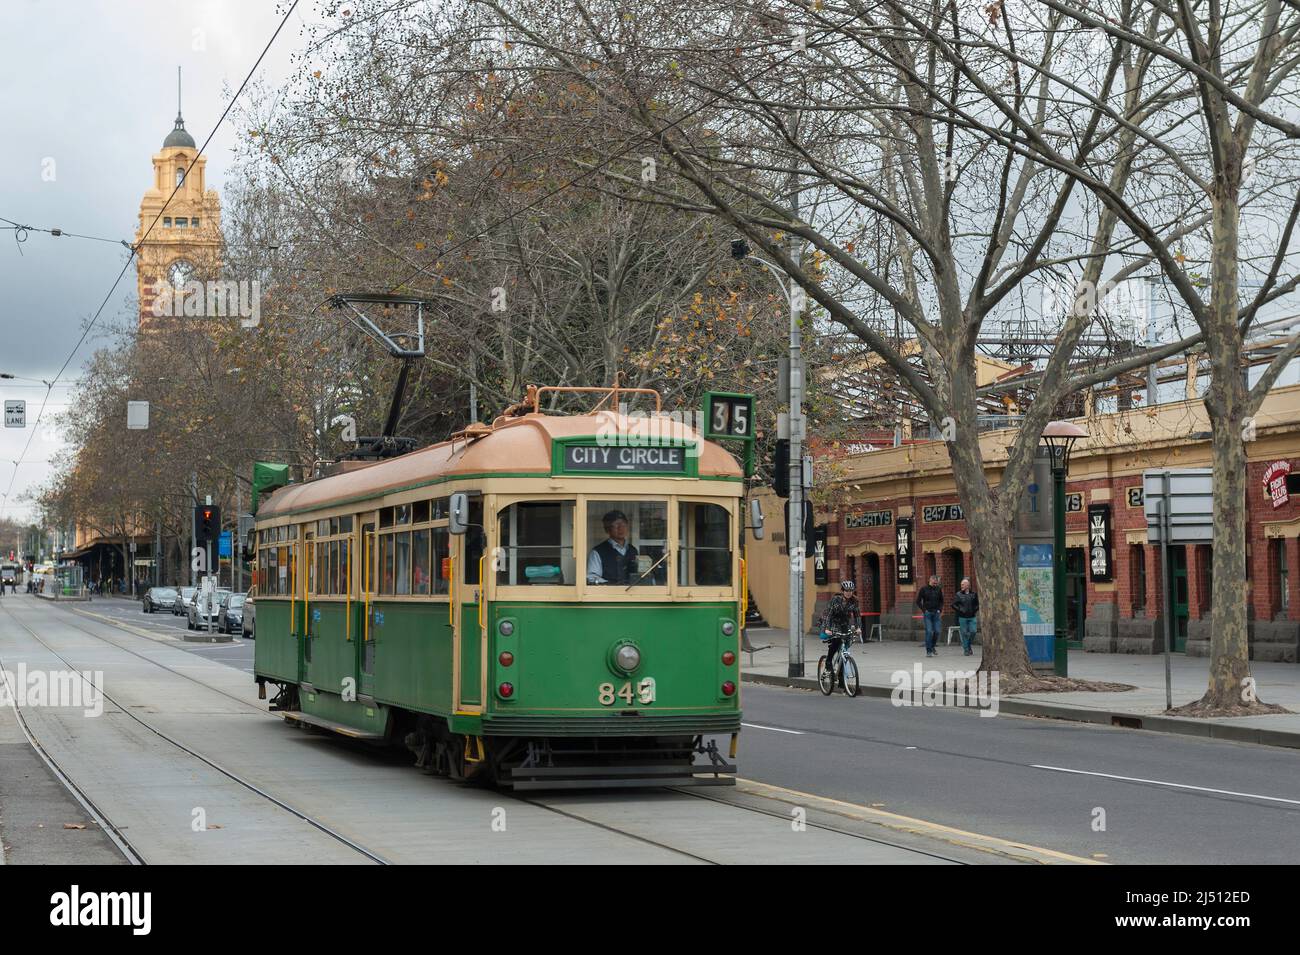 Le tram City Circle lors d'une journée froide de Winters dans le centre de Melbourne. La tour de la gare de Flinders Street est juste visible en arrière-plan Banque D'Images